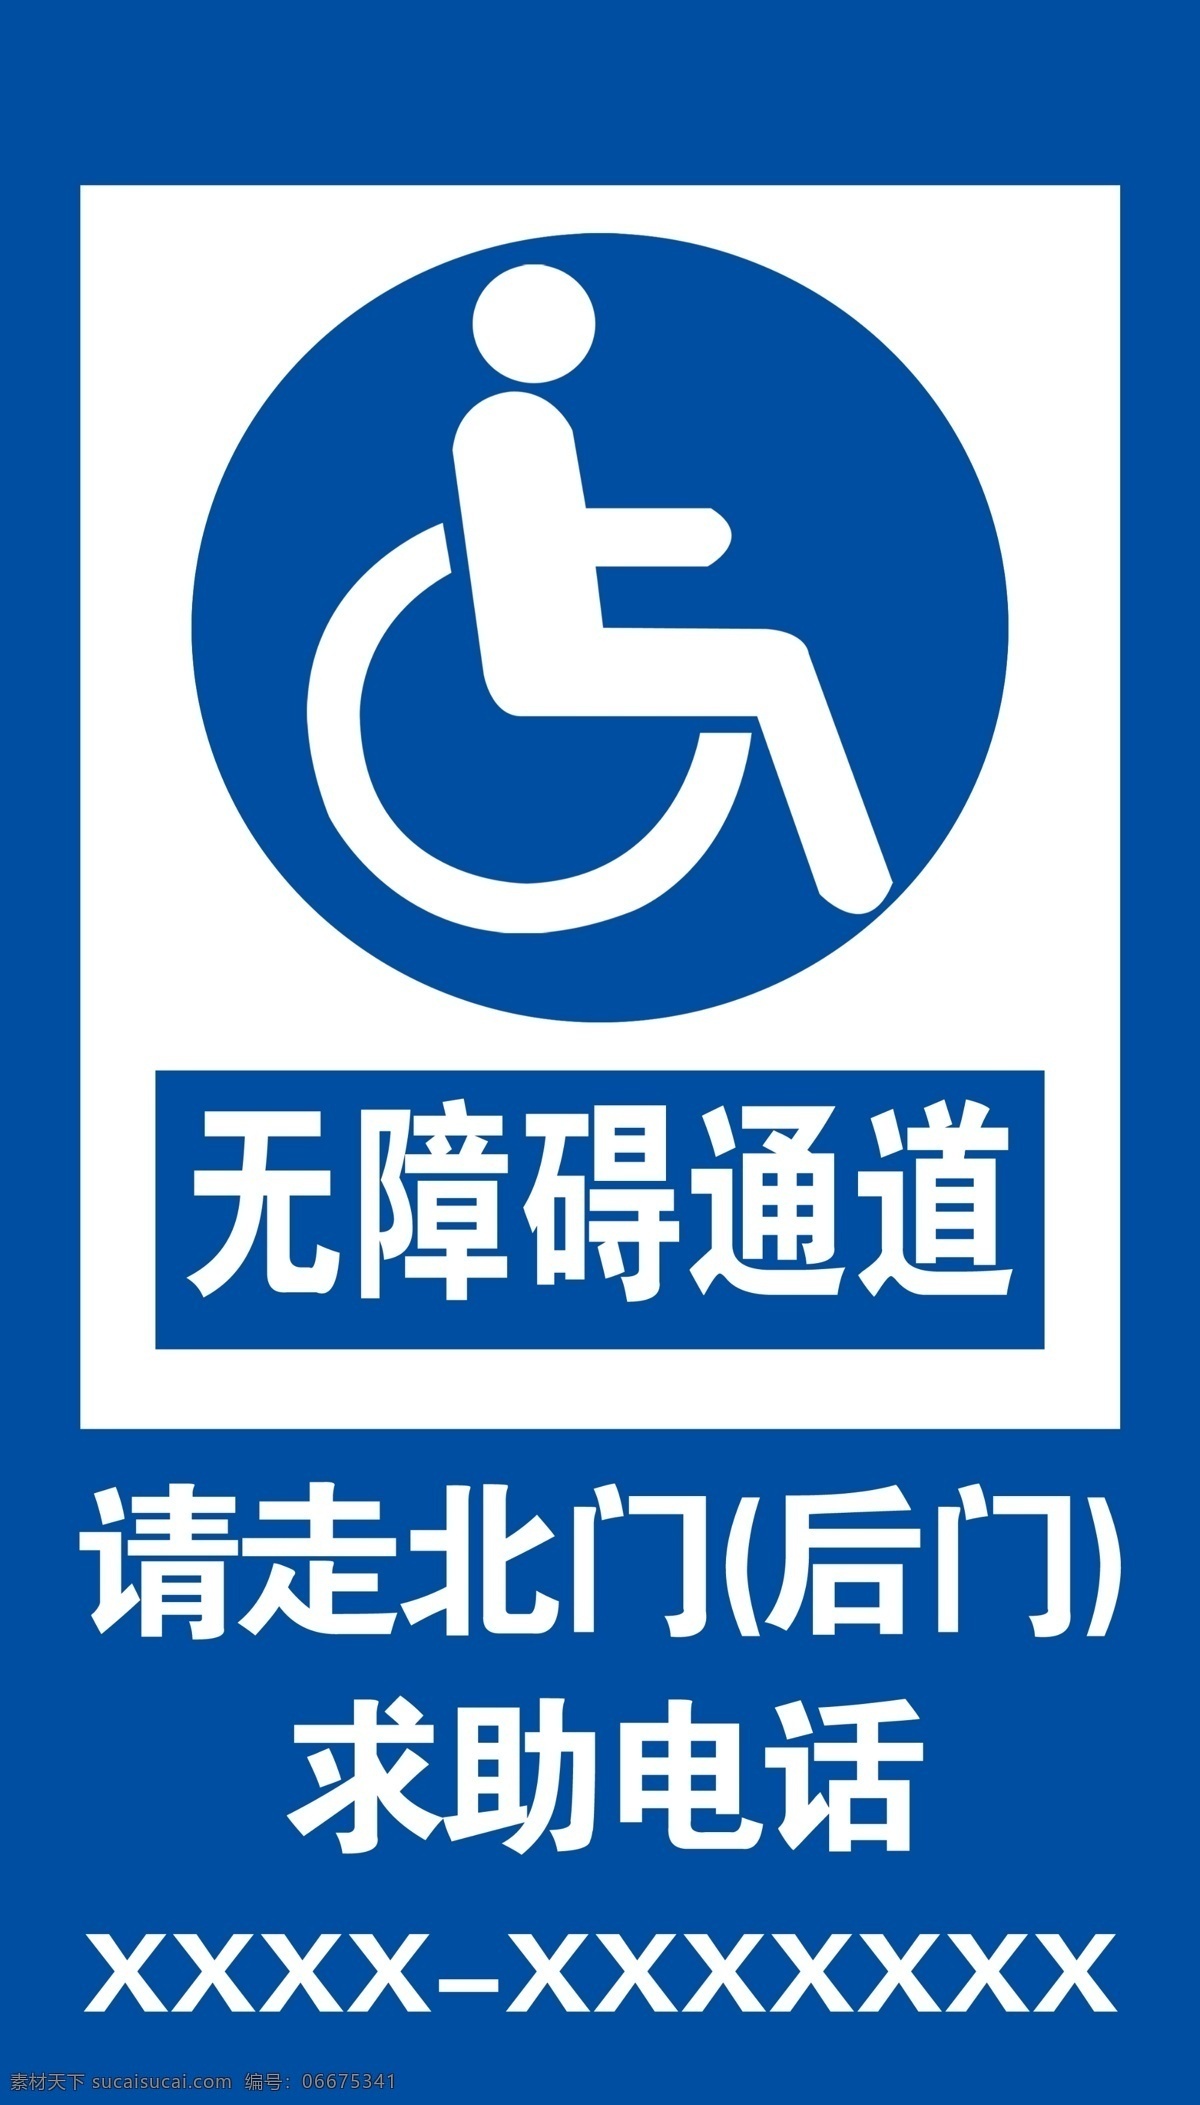 无障碍通道 障碍通道 残疾人通道 无障碍 残疾人 求助电话 海报